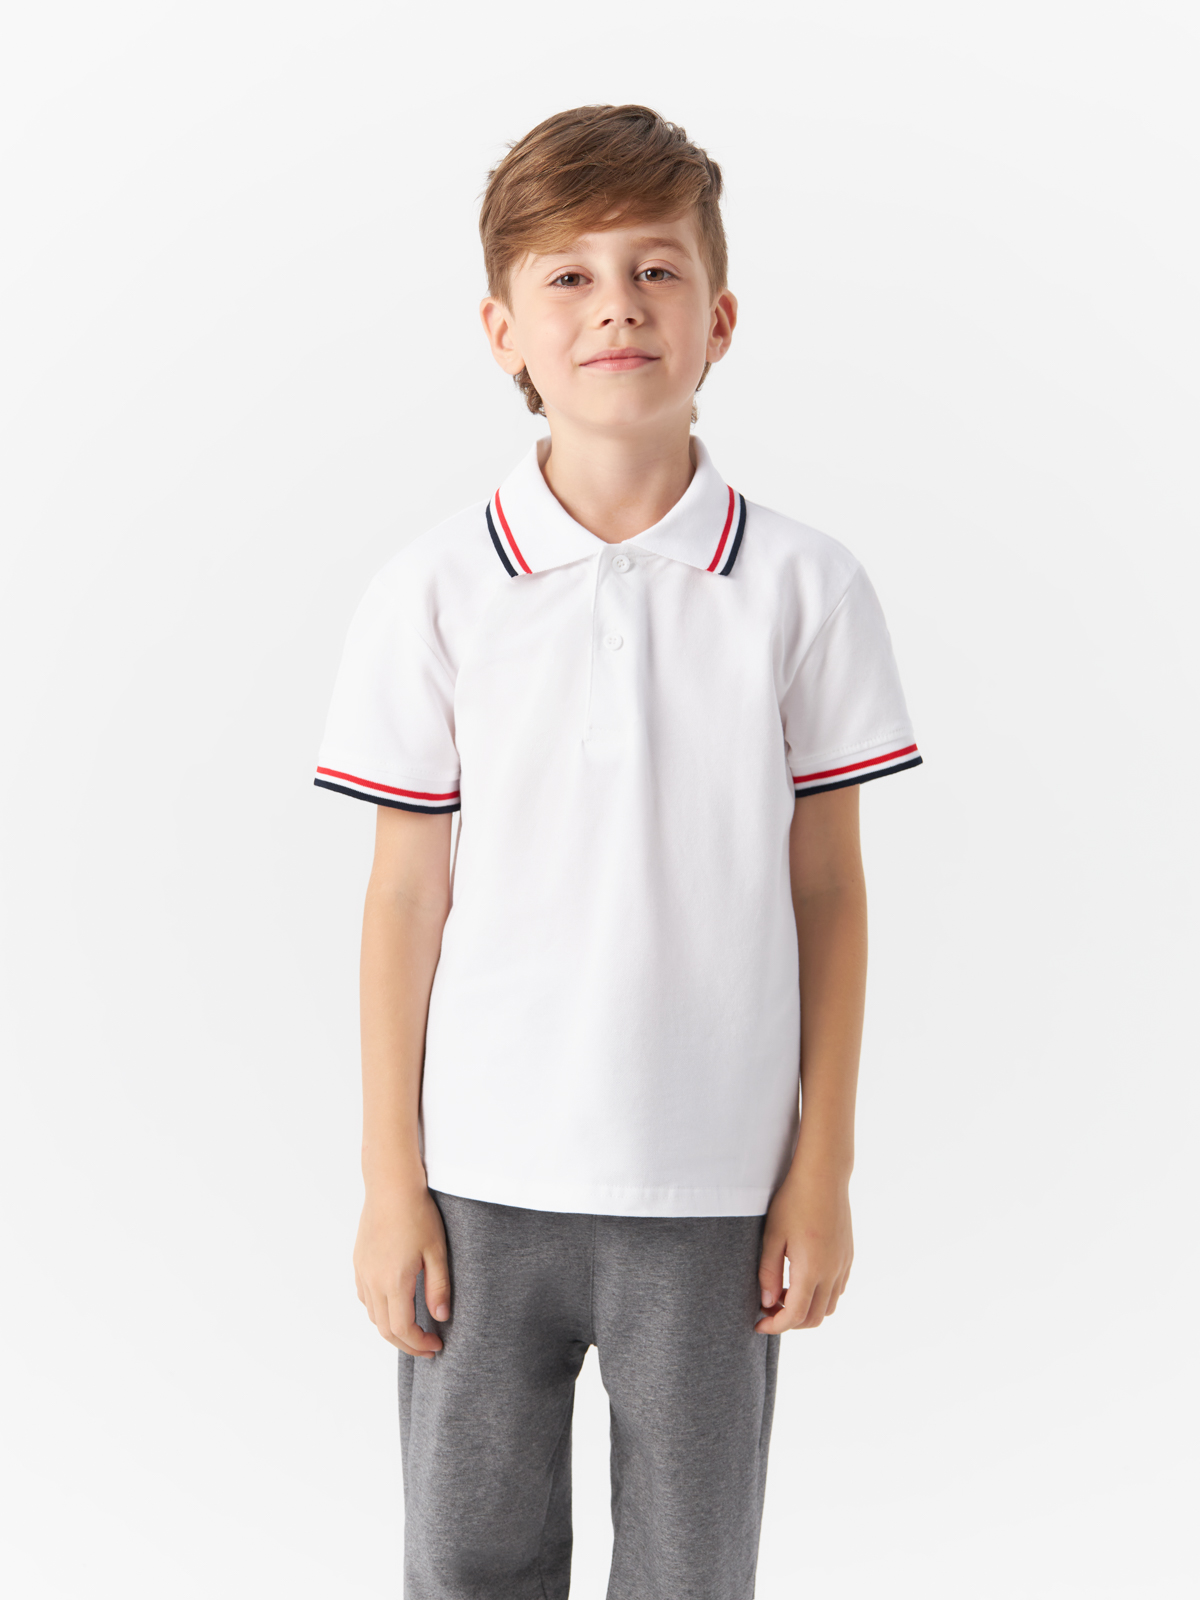 Рубашка-поло Yiwu Xflot Supply Chain детская, с коротким рукавом, BS-11, размер 140 см